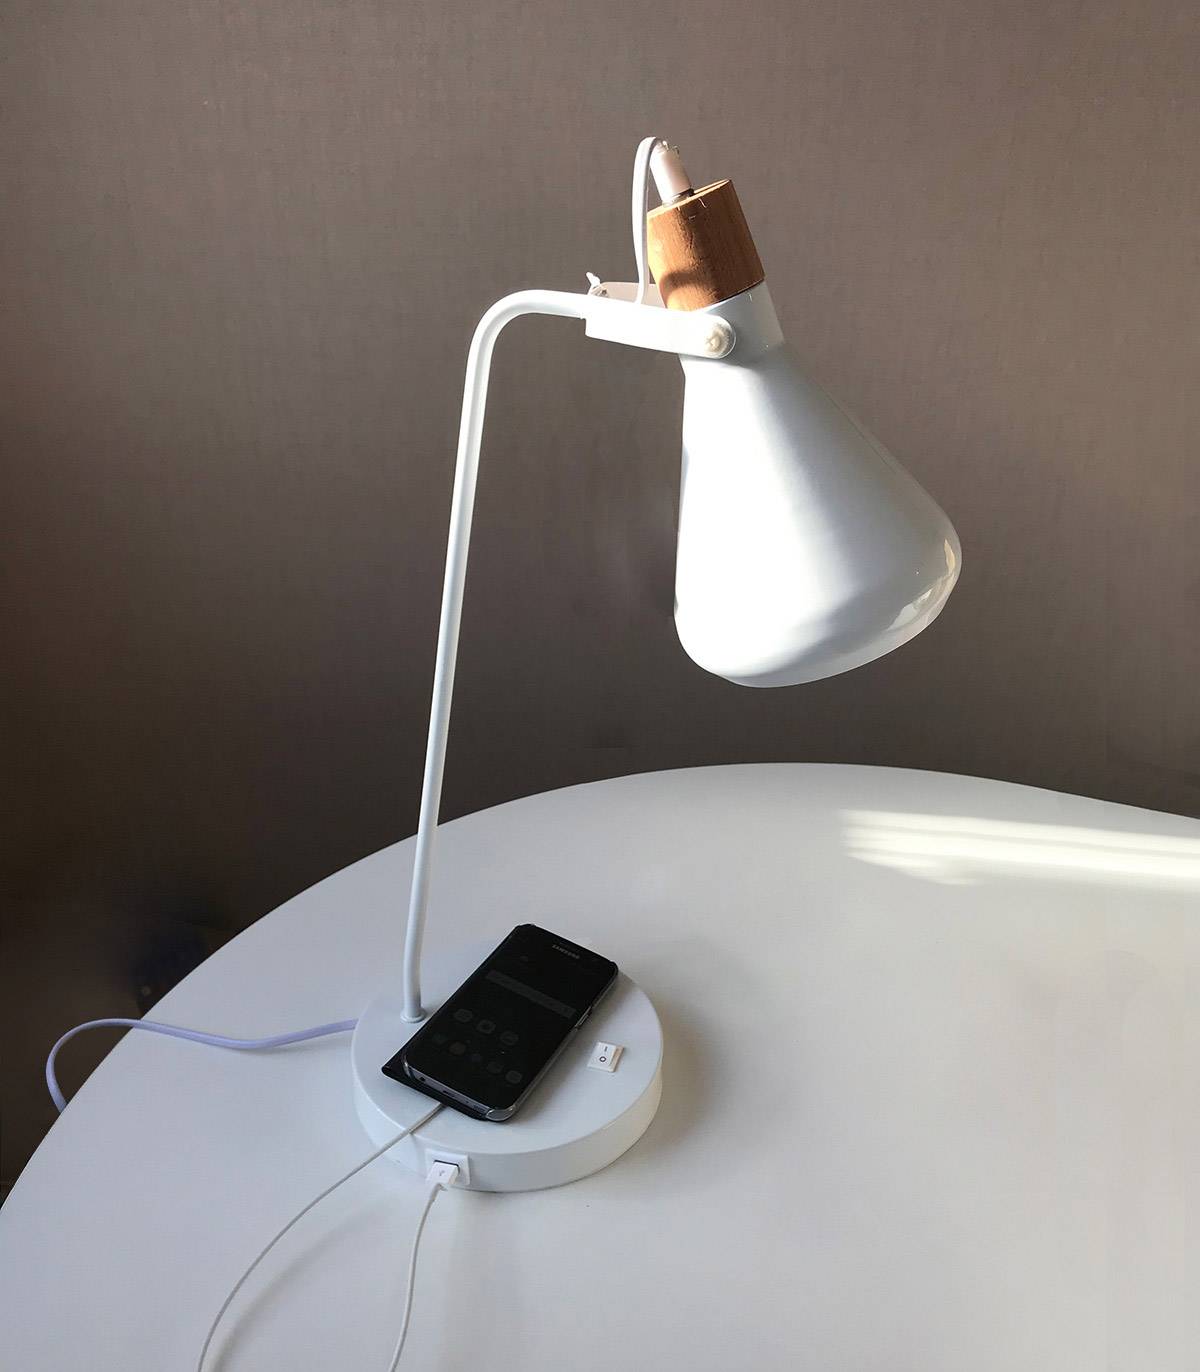 Lampe de bureau JUNIS en métal, chargeur USB intégré